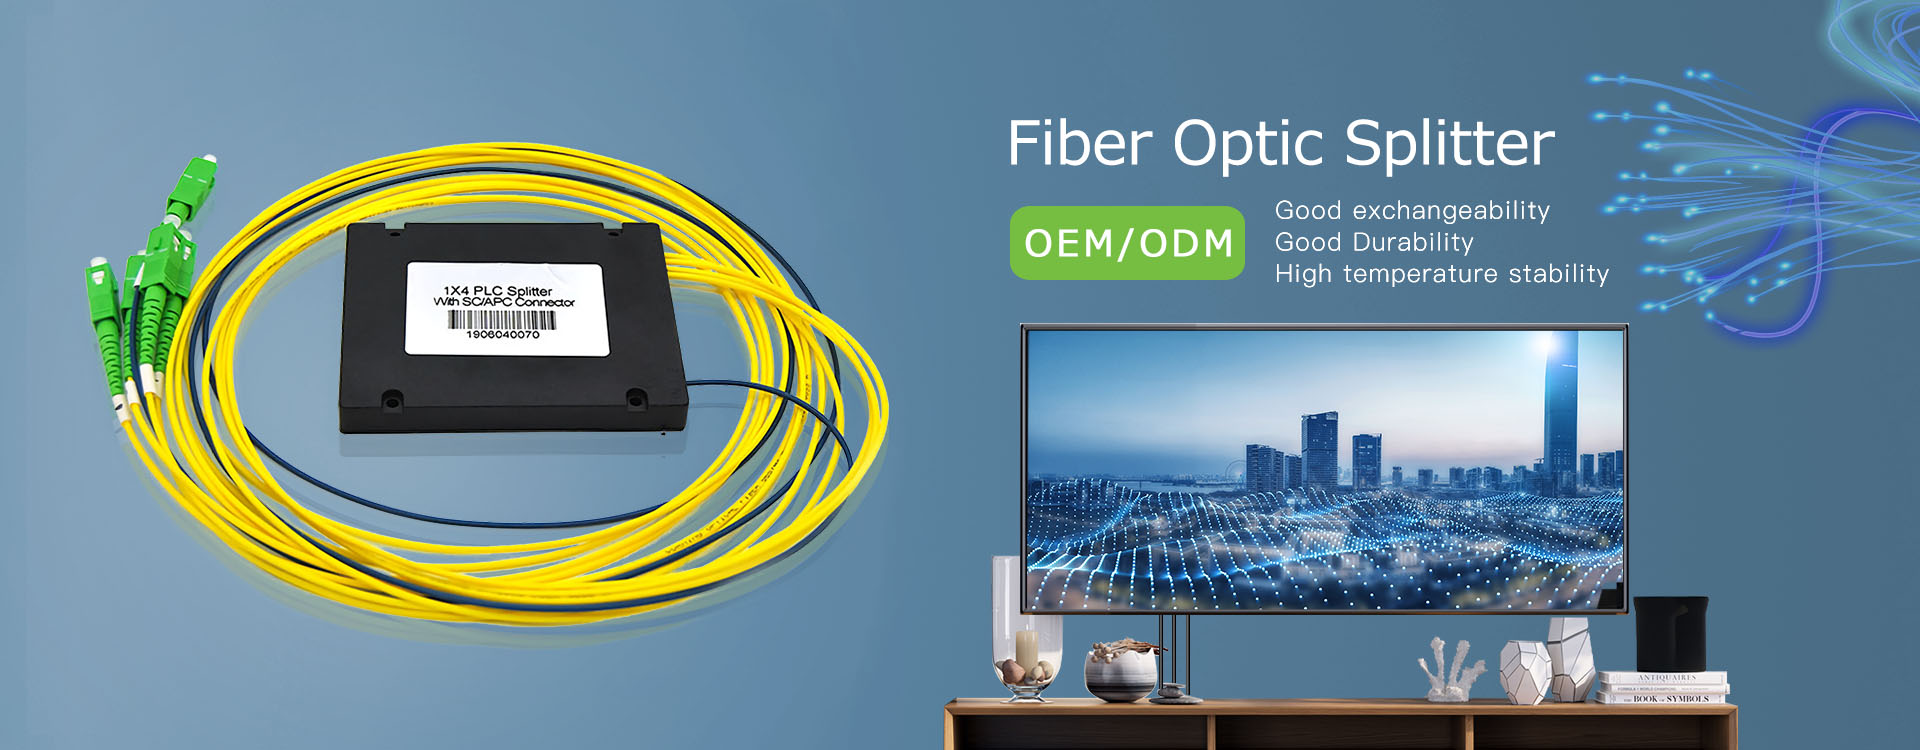 Latest Selling High Precision Fiber Optic Splitter Design for Customers